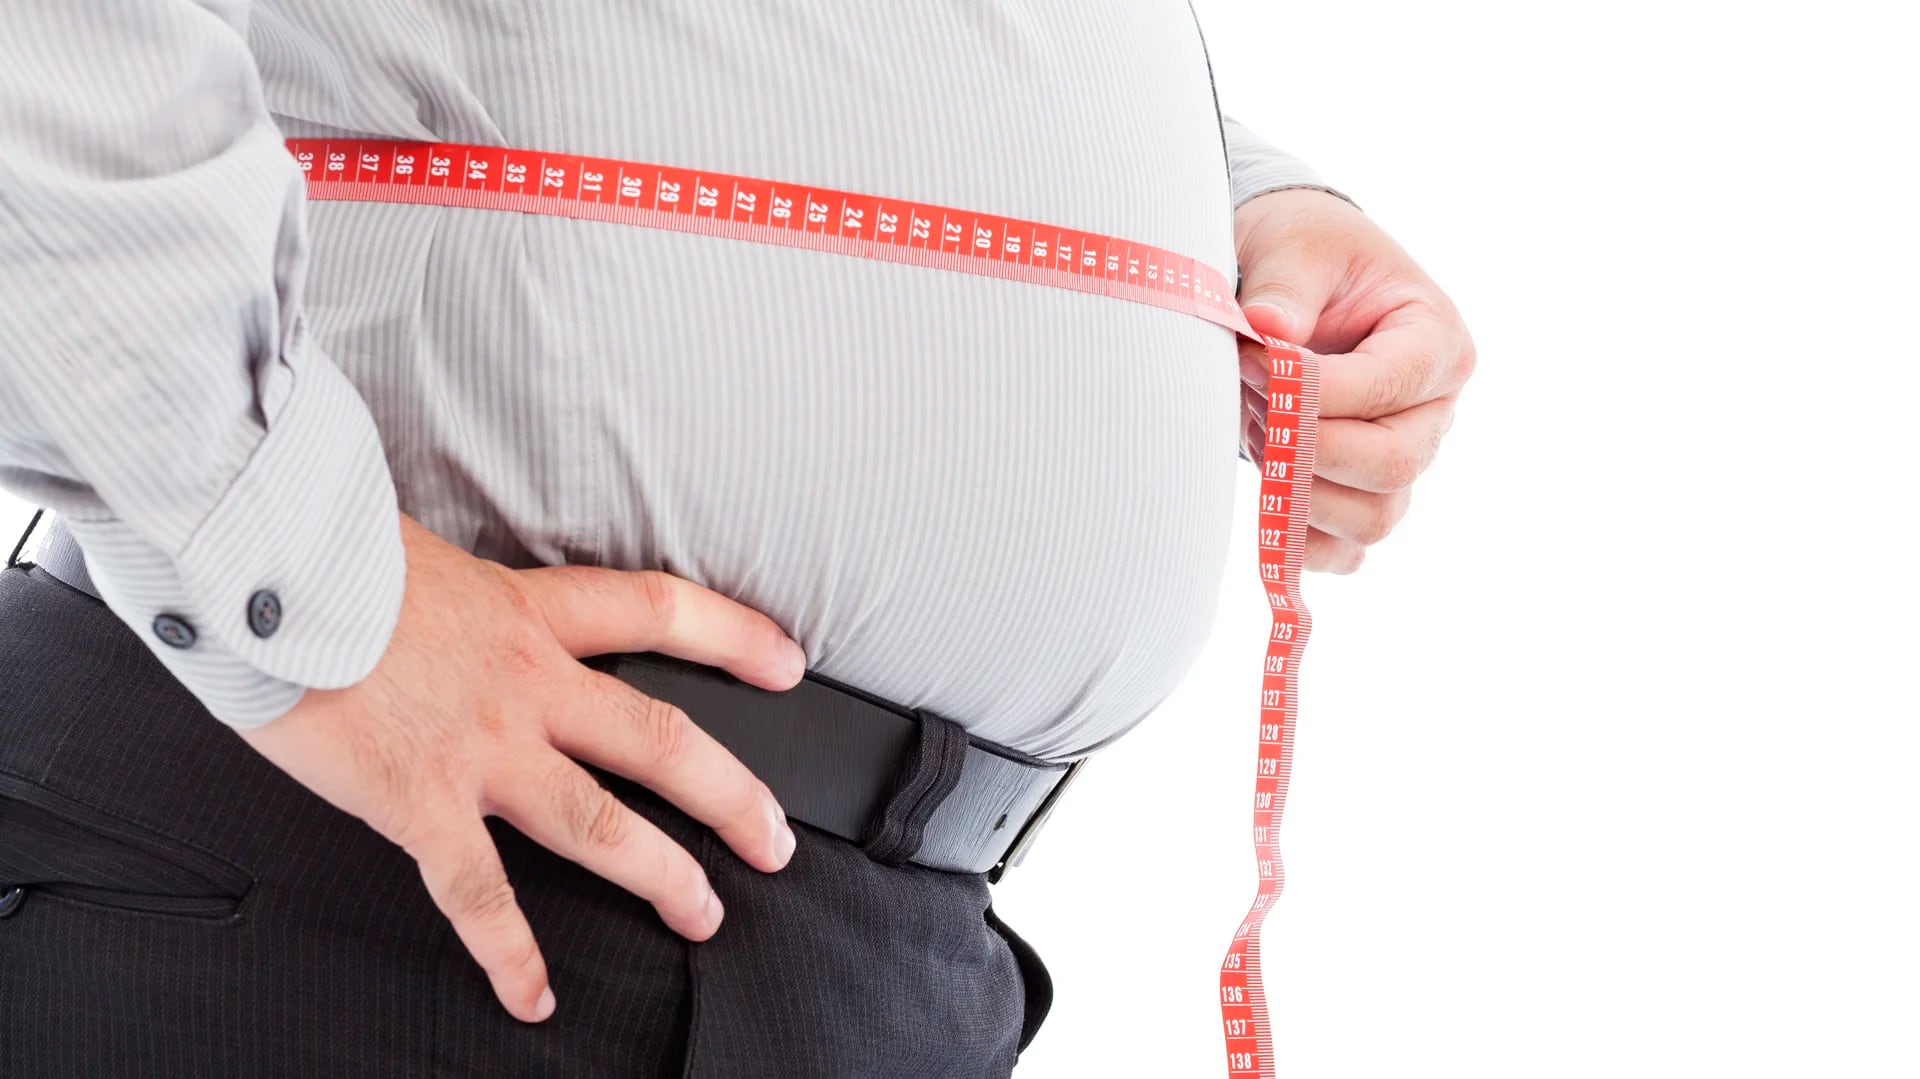 El IMC es un buen indicador para saber si se tiene sobrepeso u obesidad (iStock)